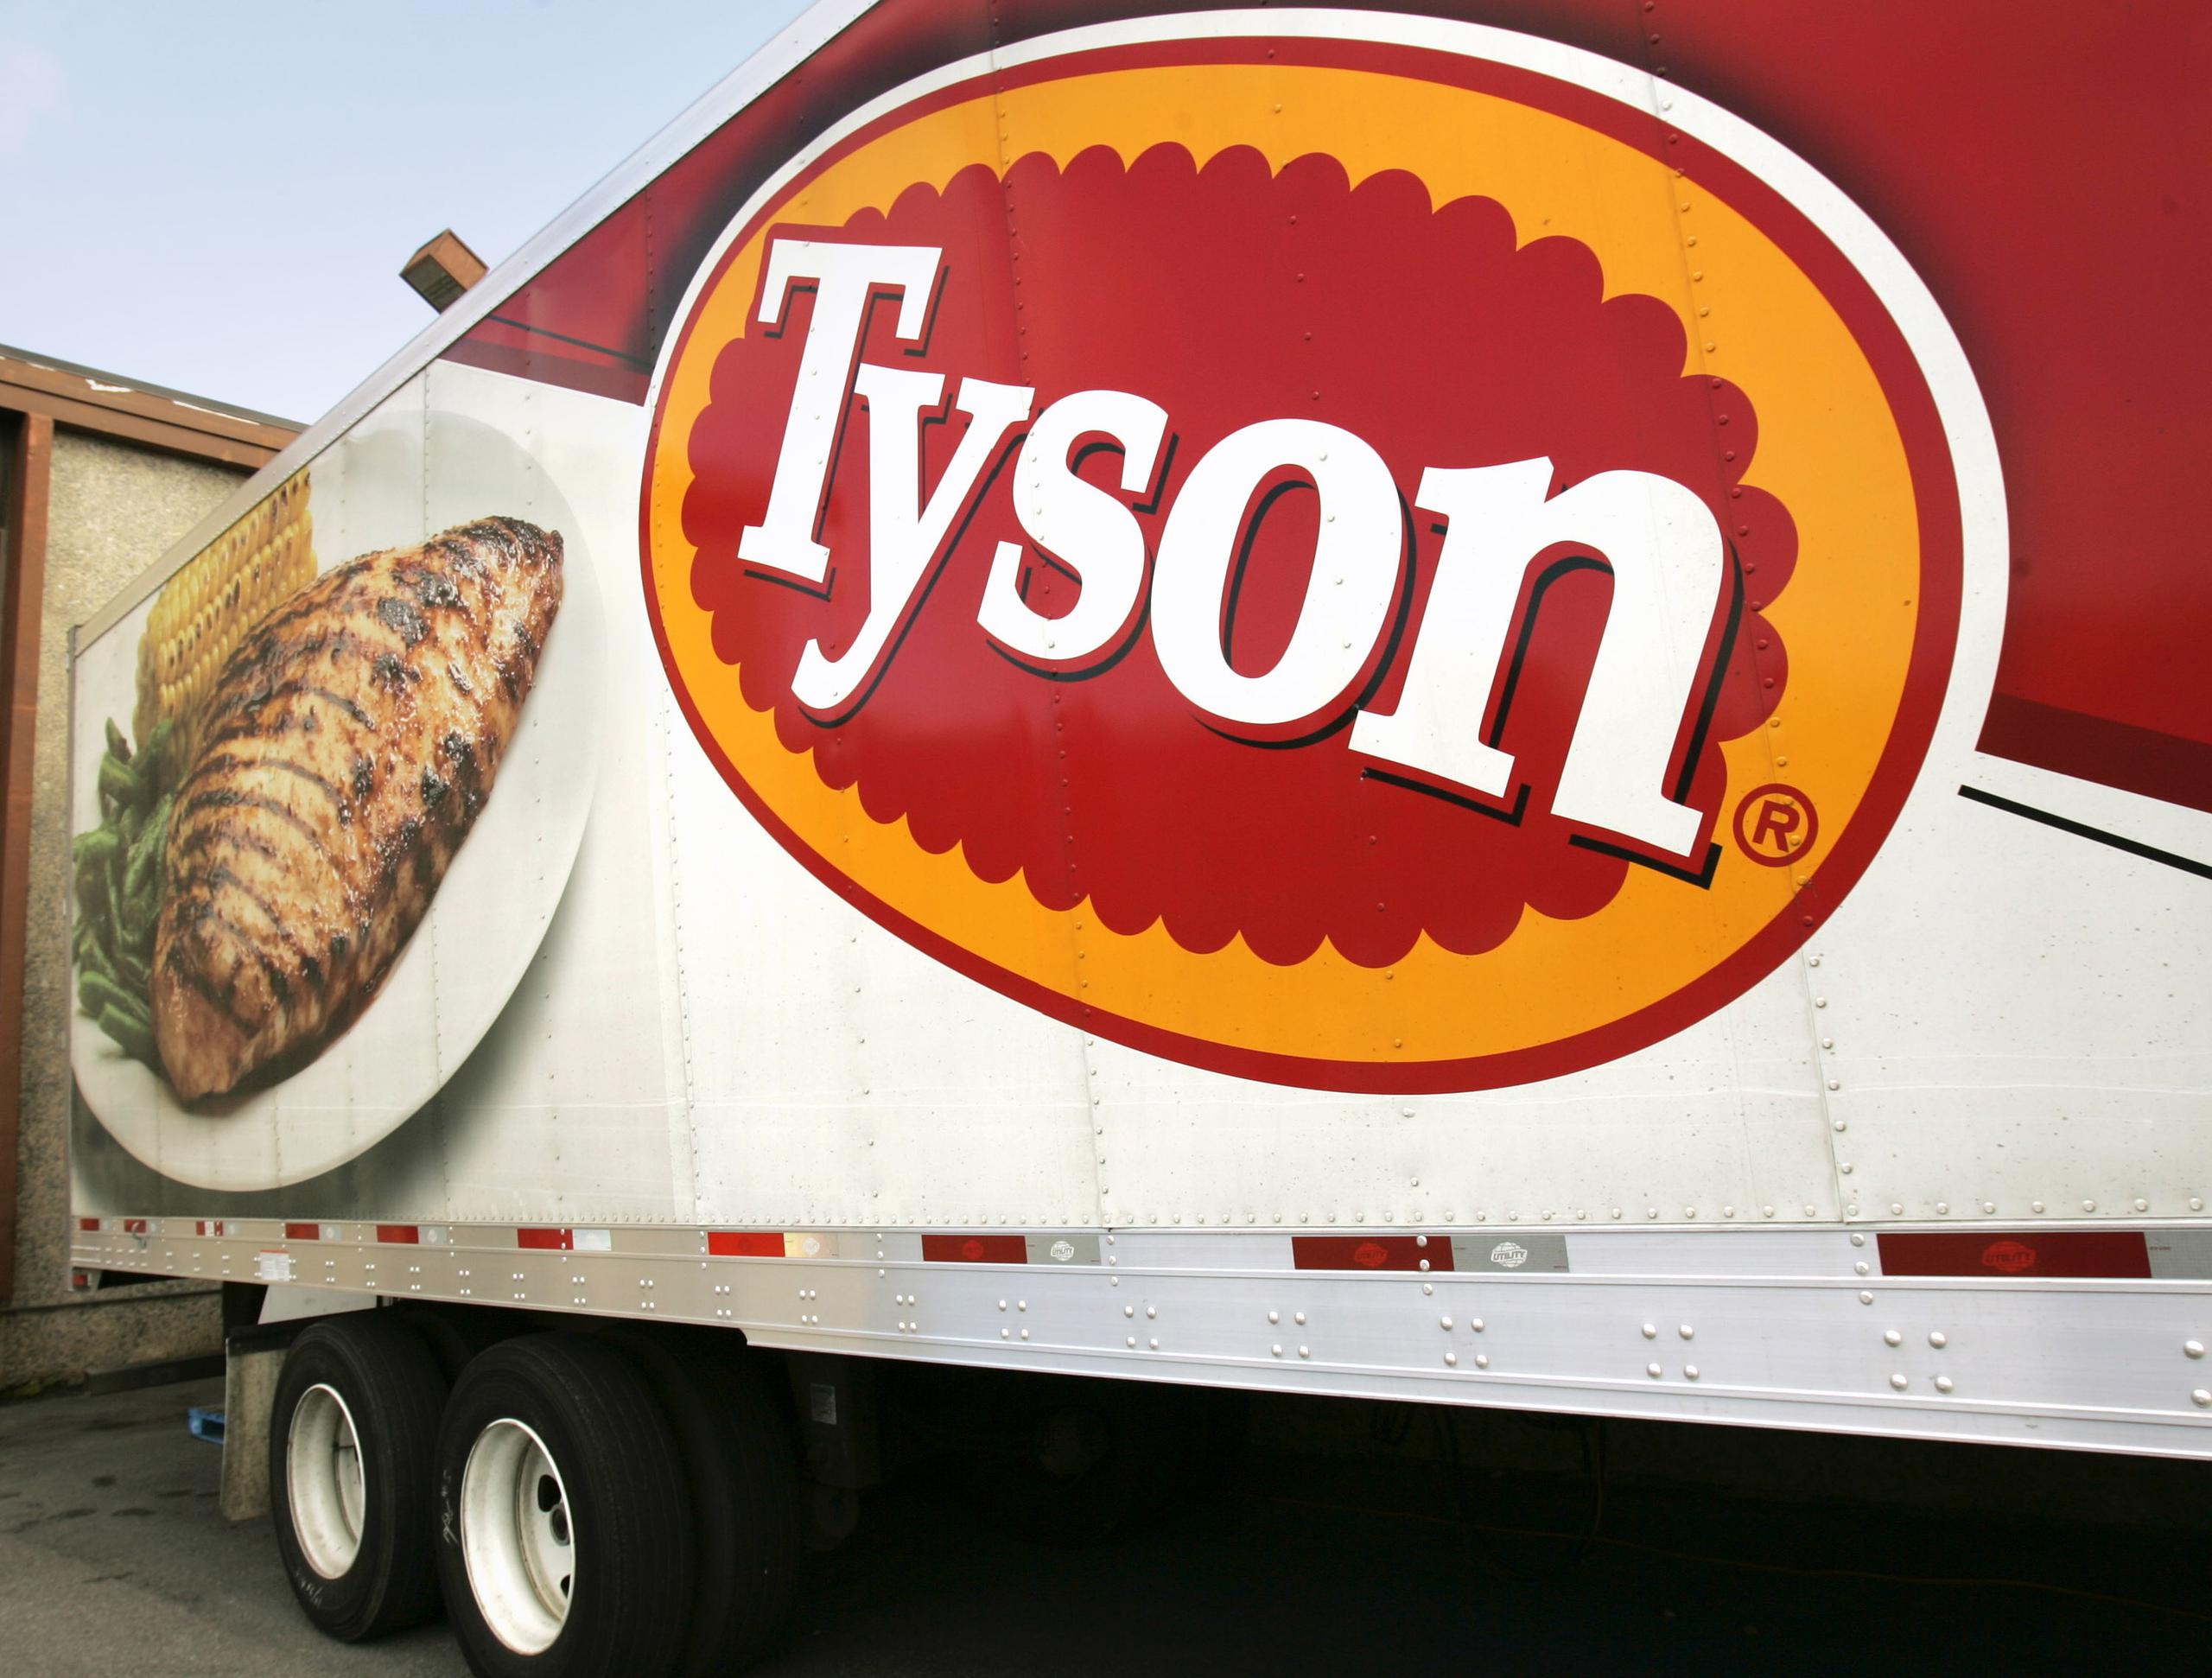 La planta de Tyson puede procesar 19,500 cerdos por día, lo que representa casi 4% de la capacidad de procesamiento de puerco de Estados Unidos